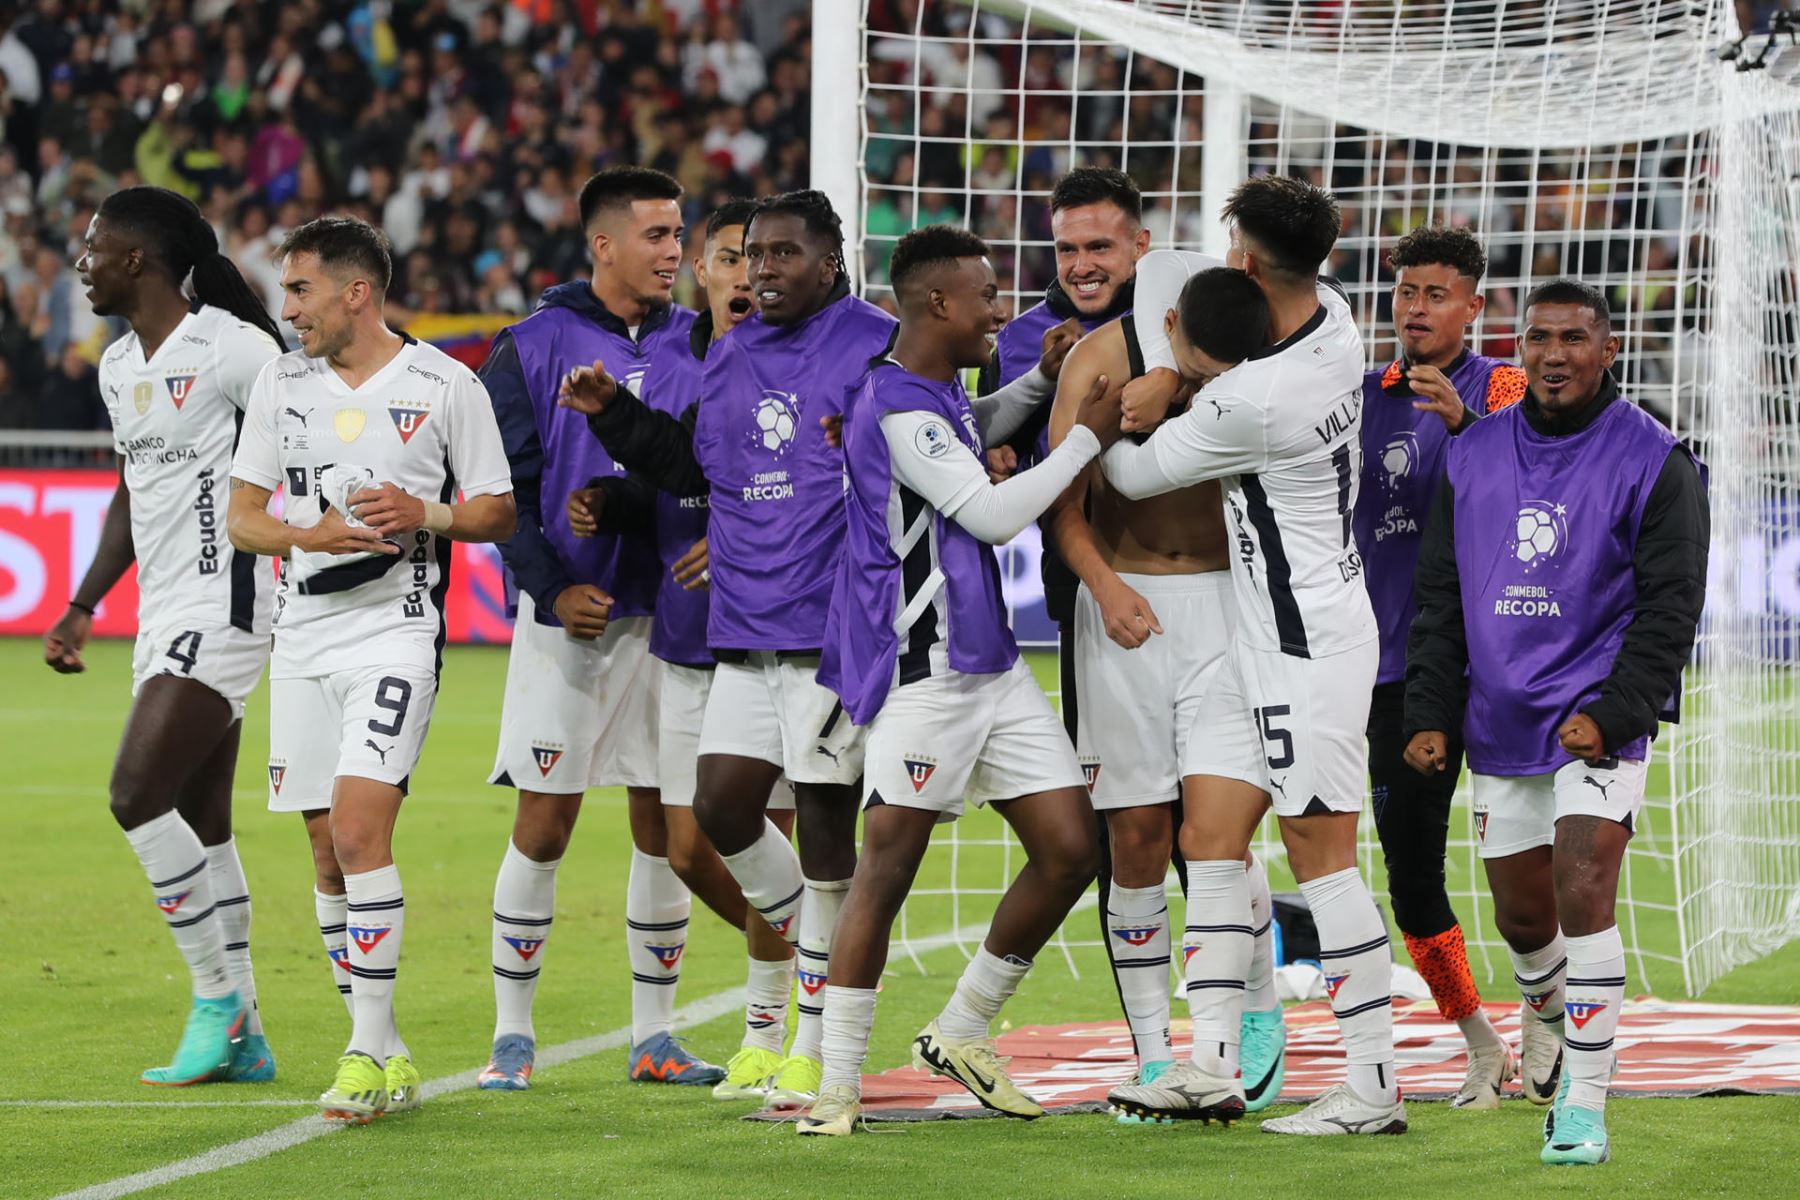 Jugadores de Quito celebran un gol este jueves, durante un partido de la Recopa Sudamericana entre LDU Quito y Fluminense, en el estadio Rodrigo Paz Delgado en Quito (Ecuador).
Foto: EFE